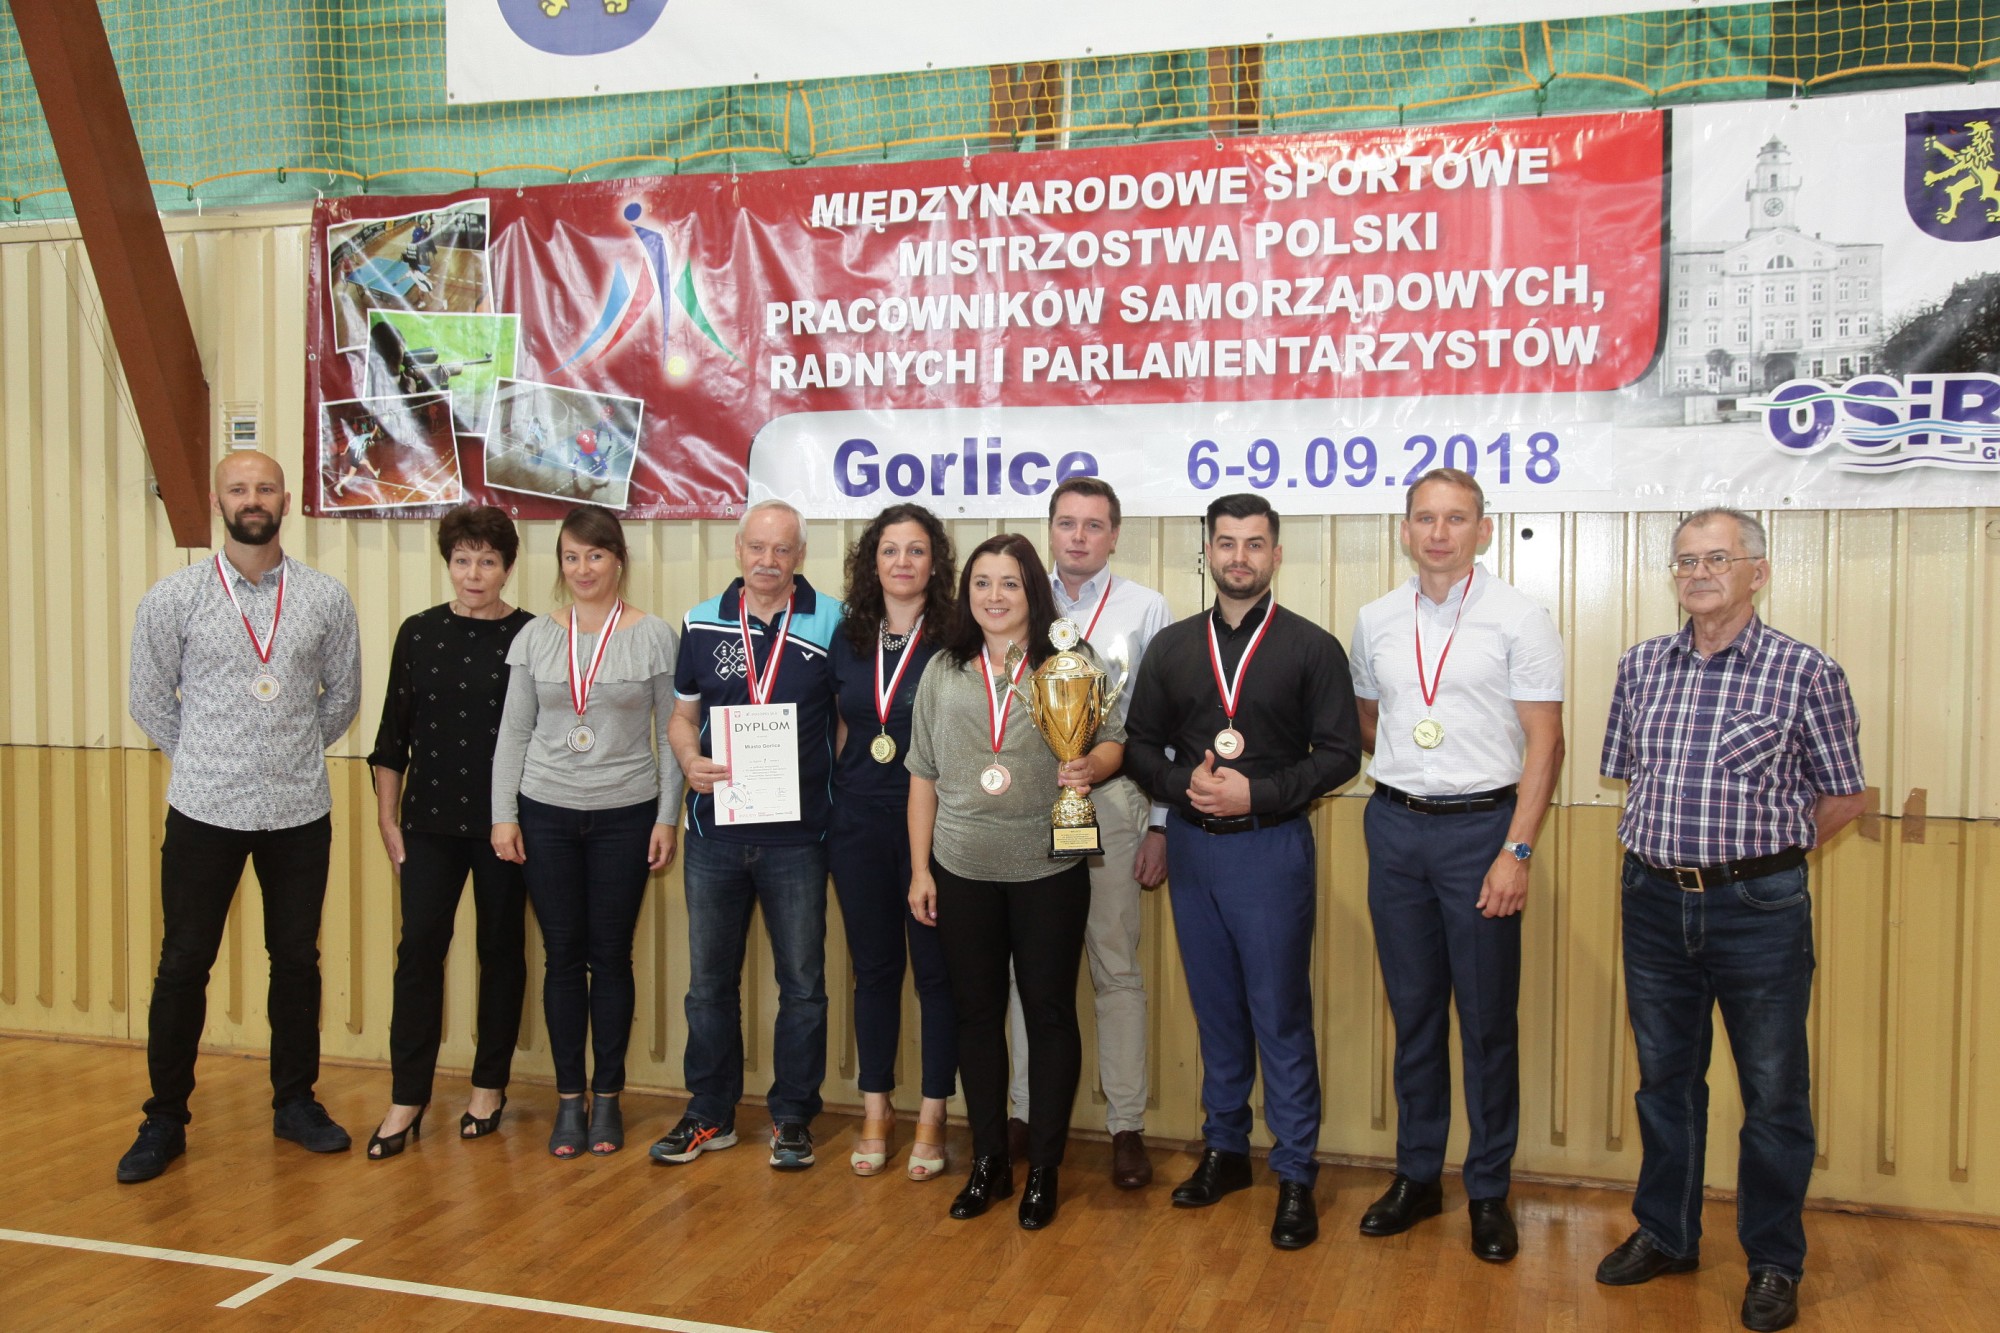 XIII Międzynarodowe Sportowe Mistrzostwa Polski Pracowników Samorządowych, Radnych i Parlamentarzystów